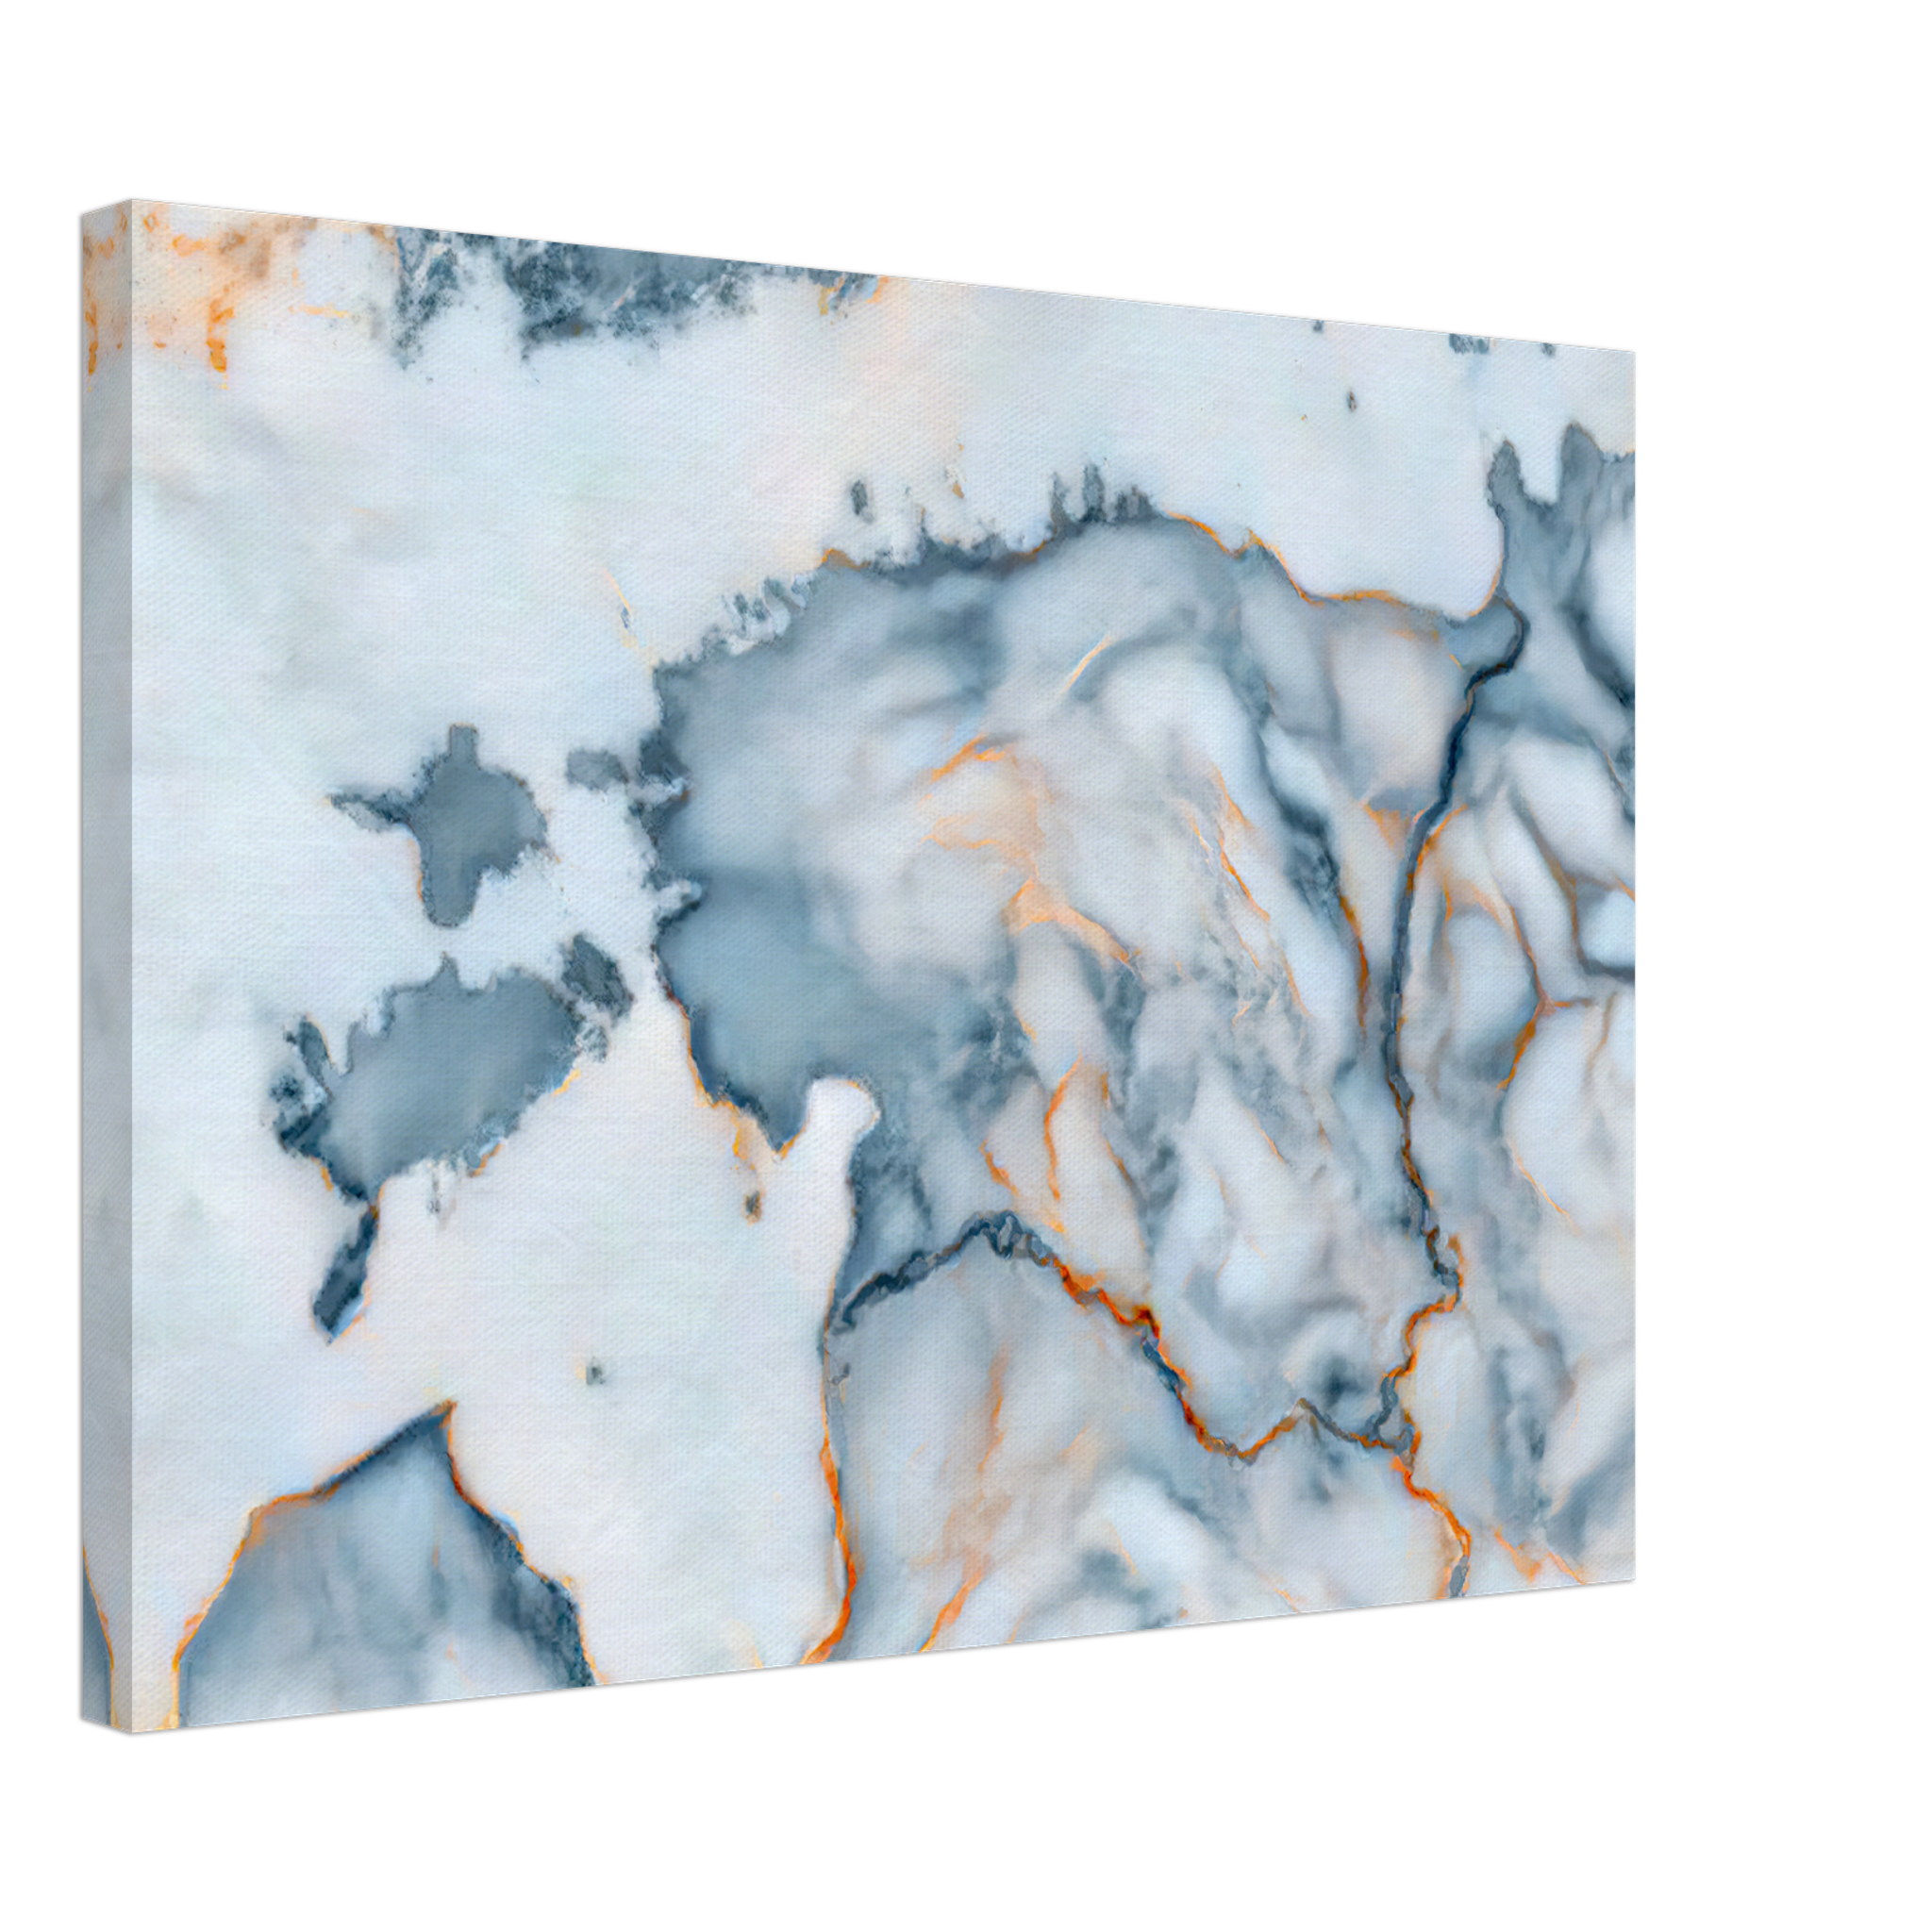 Estonia Marble Map Canvas